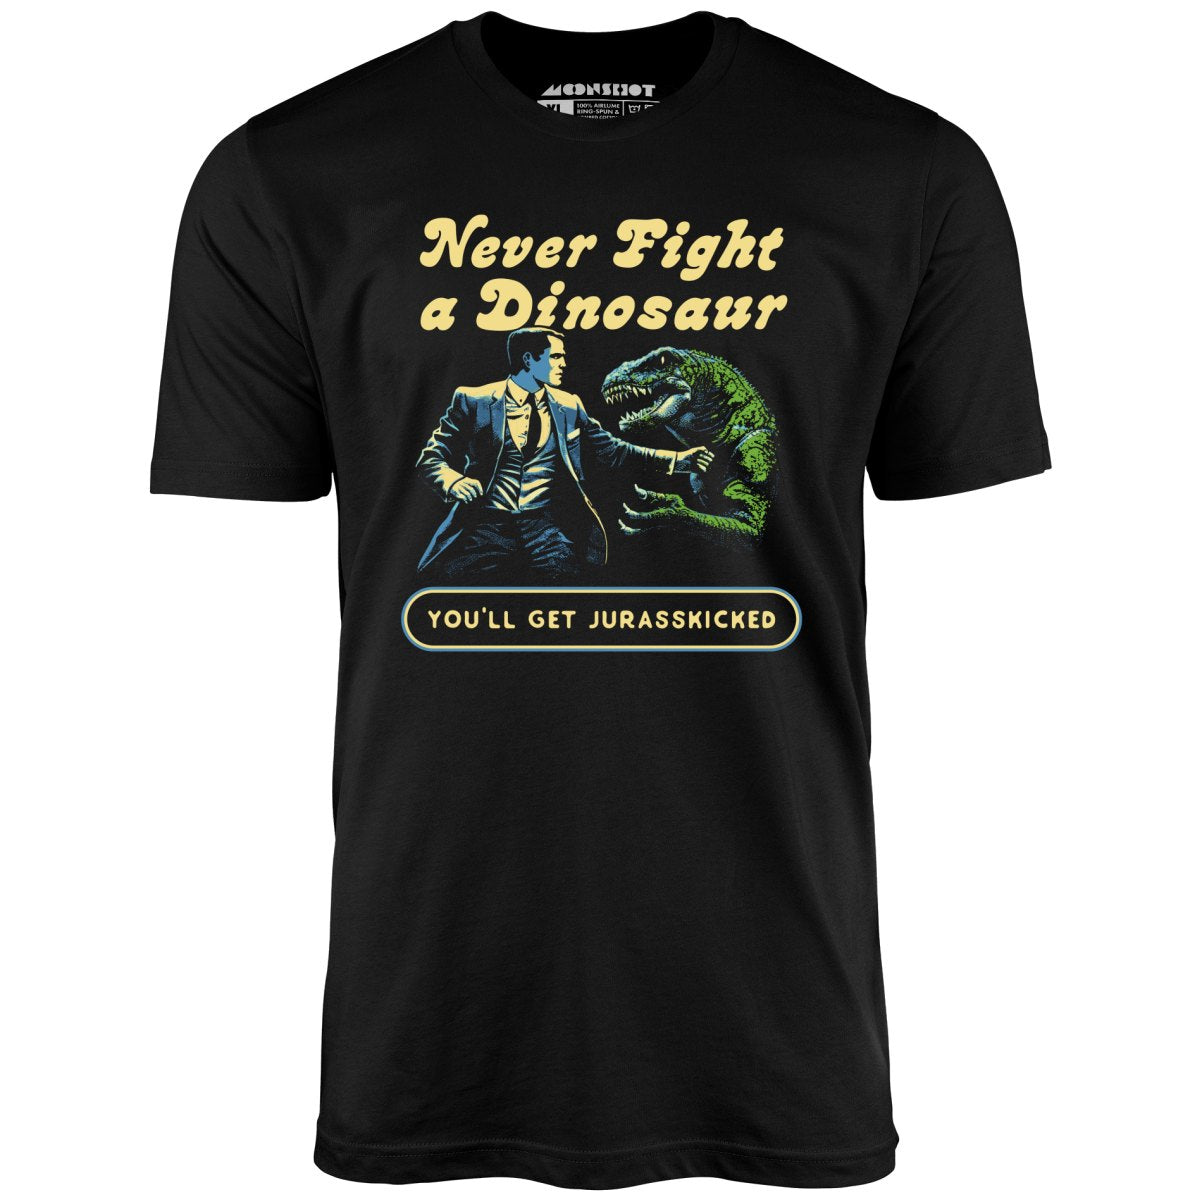 Never Fight a Dinosaur - Unisex T-Shirt